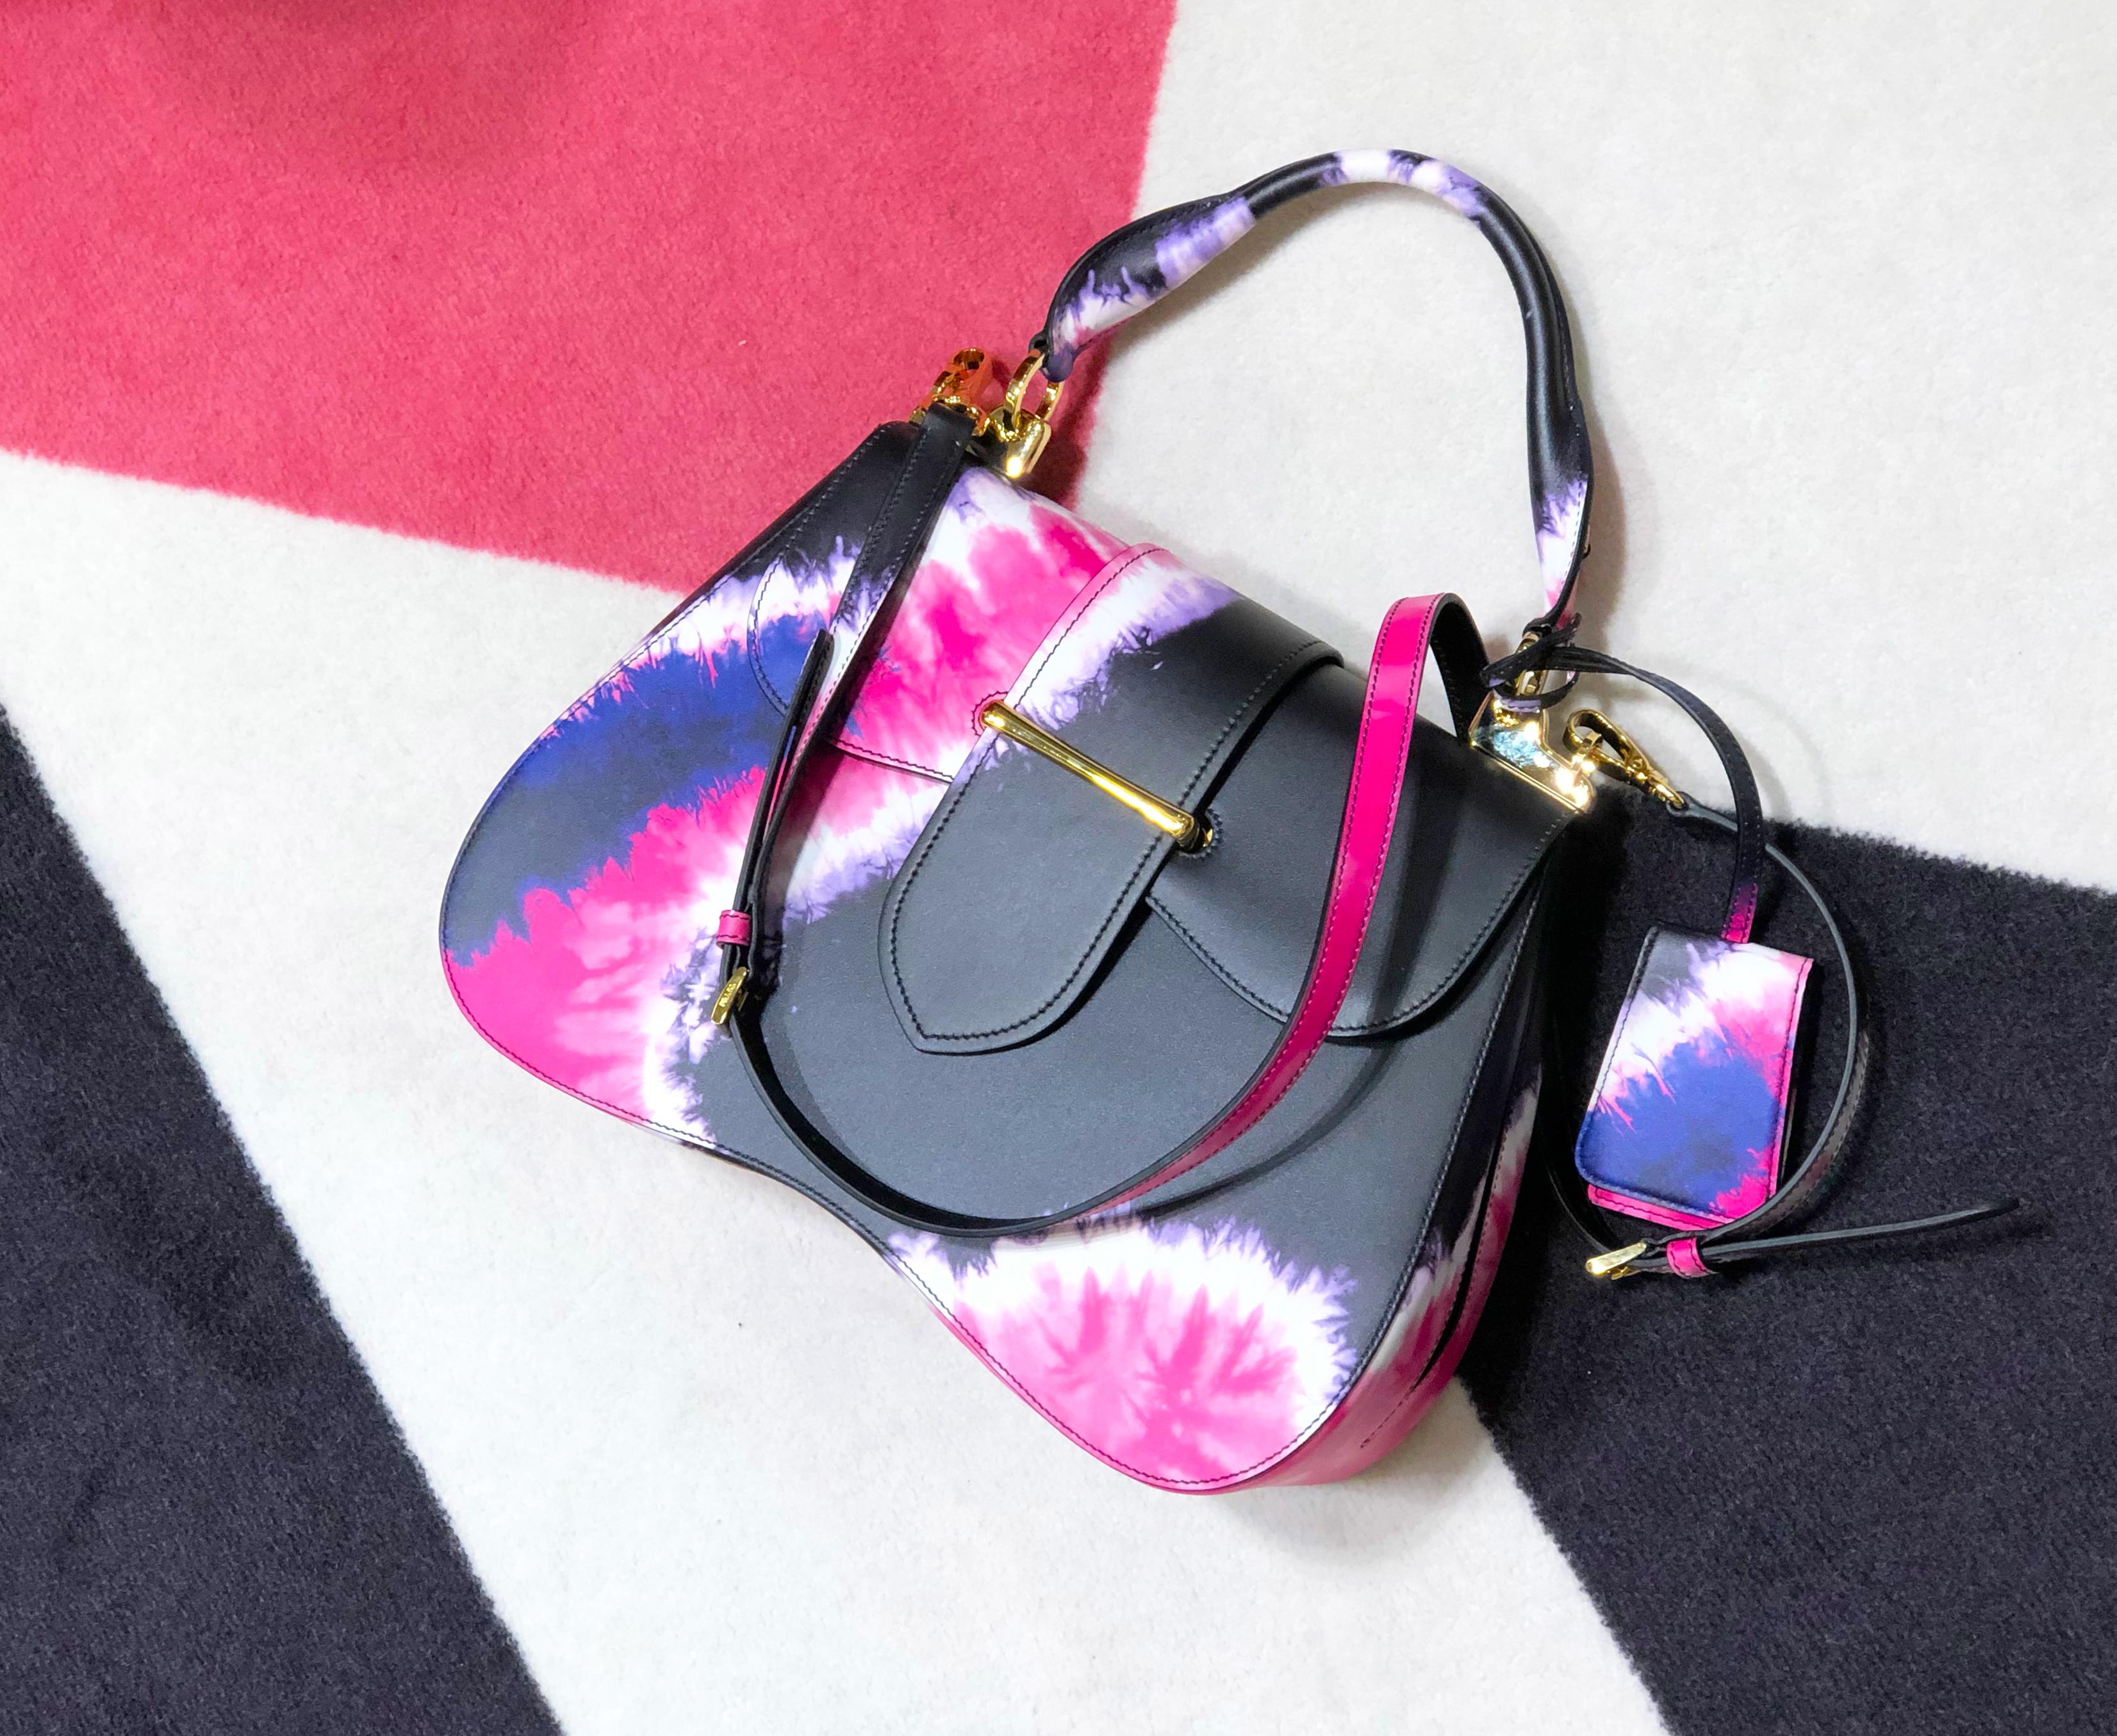 Prada Tie-Dye Sidonie Top-Handle Tote Bag in black, pink and white